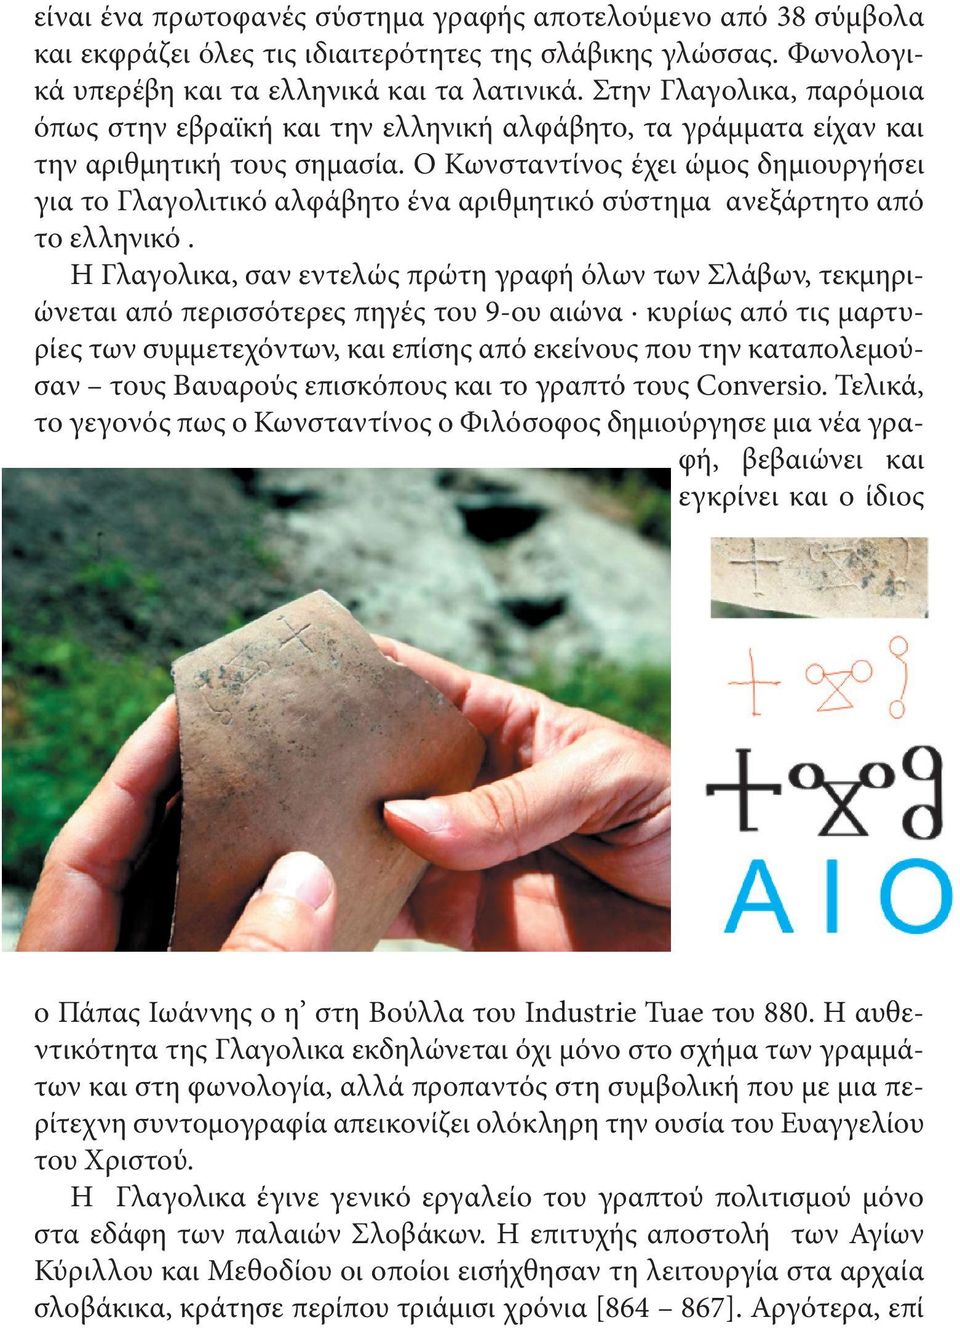 Ο Κωνσταντίνος έχει ώµος δηµιουργήσει για το Γλαγολιτικό αλφάβητο ένα αριθµητικό σύστηµα ανεξάρτητο από το ελληνικό.